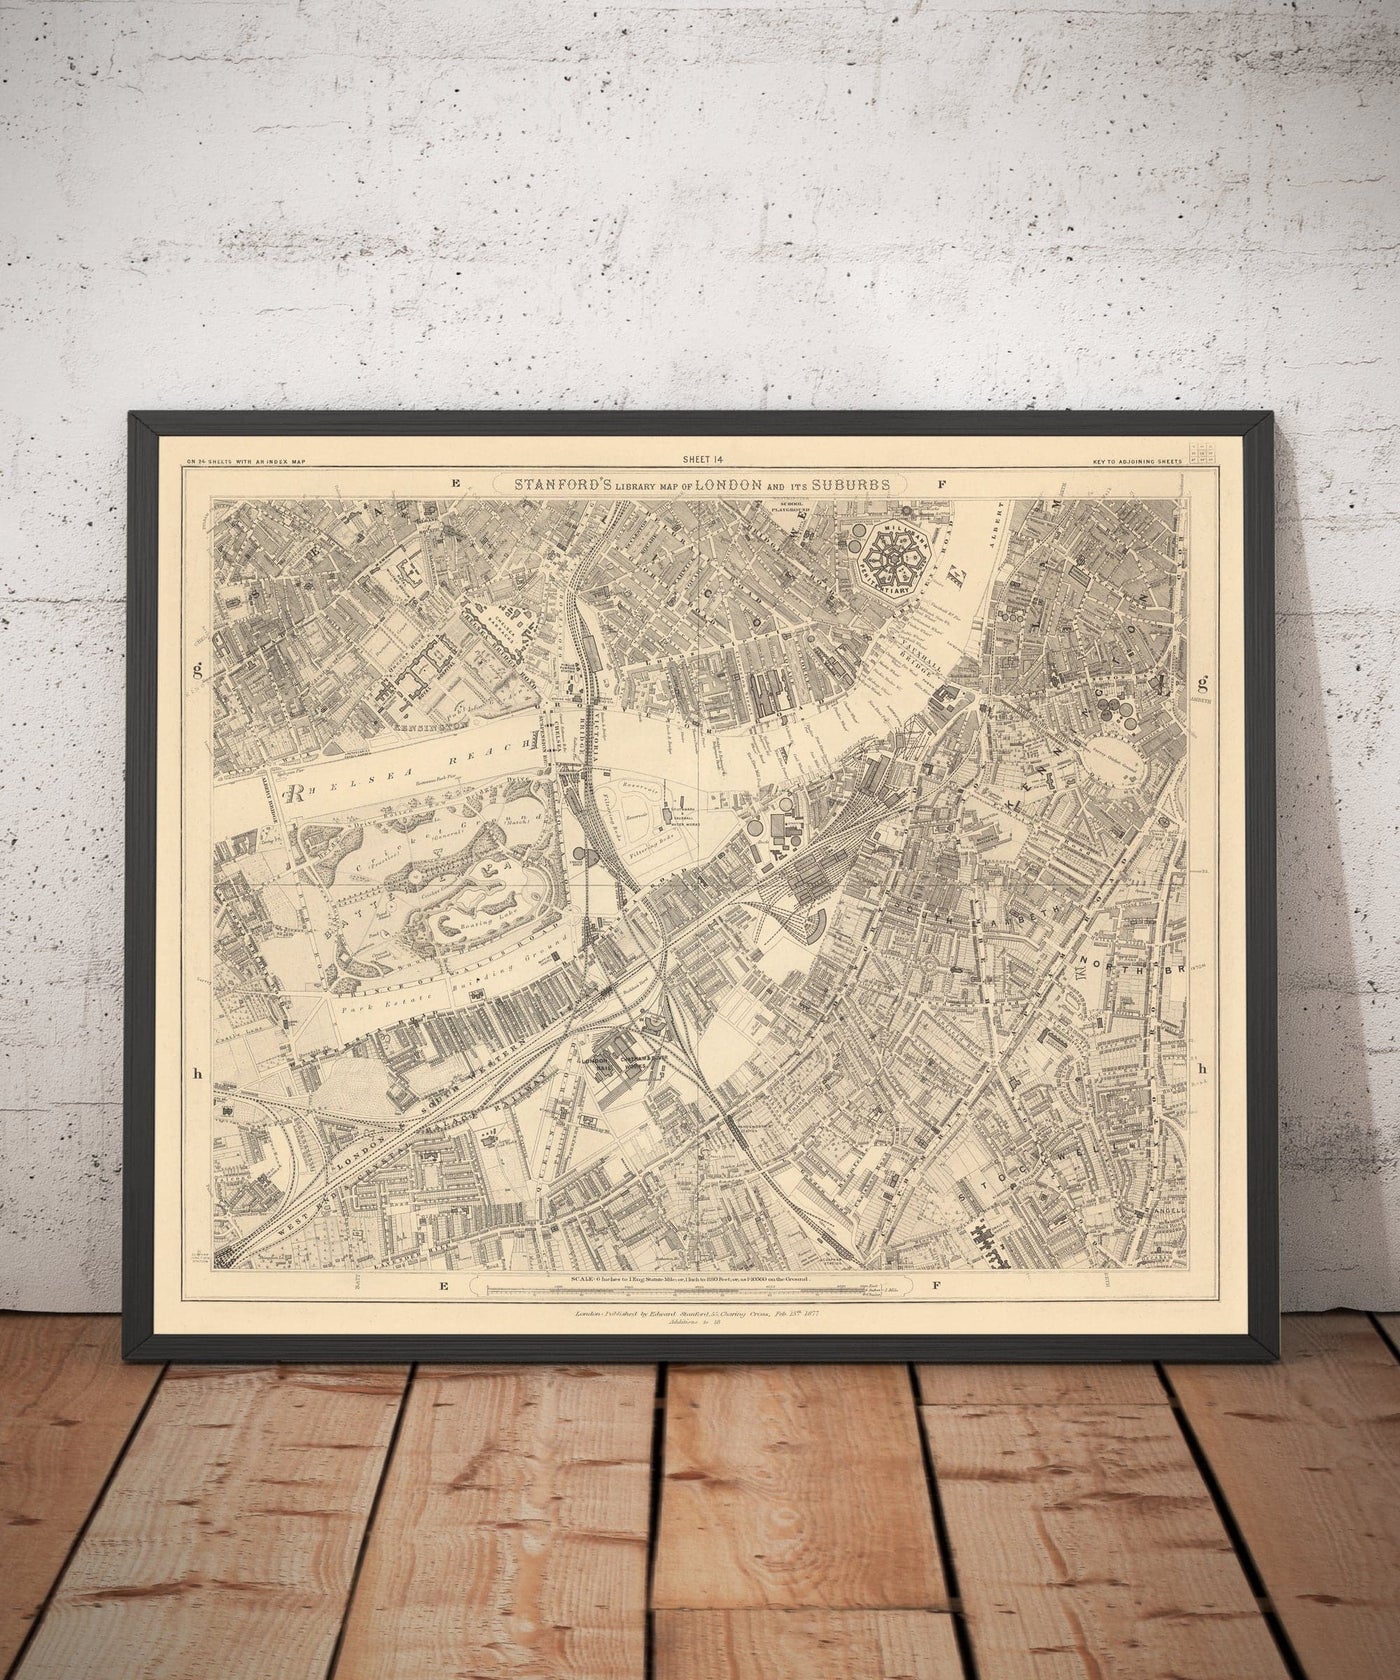 Ancienne carte de South London en 1862 par Edward Stanford - Battersea, Chelsea, Ovale, Stockwell, Wandsworth - SW3, SW1, SE11, SW8, SW11, SW9, SW4